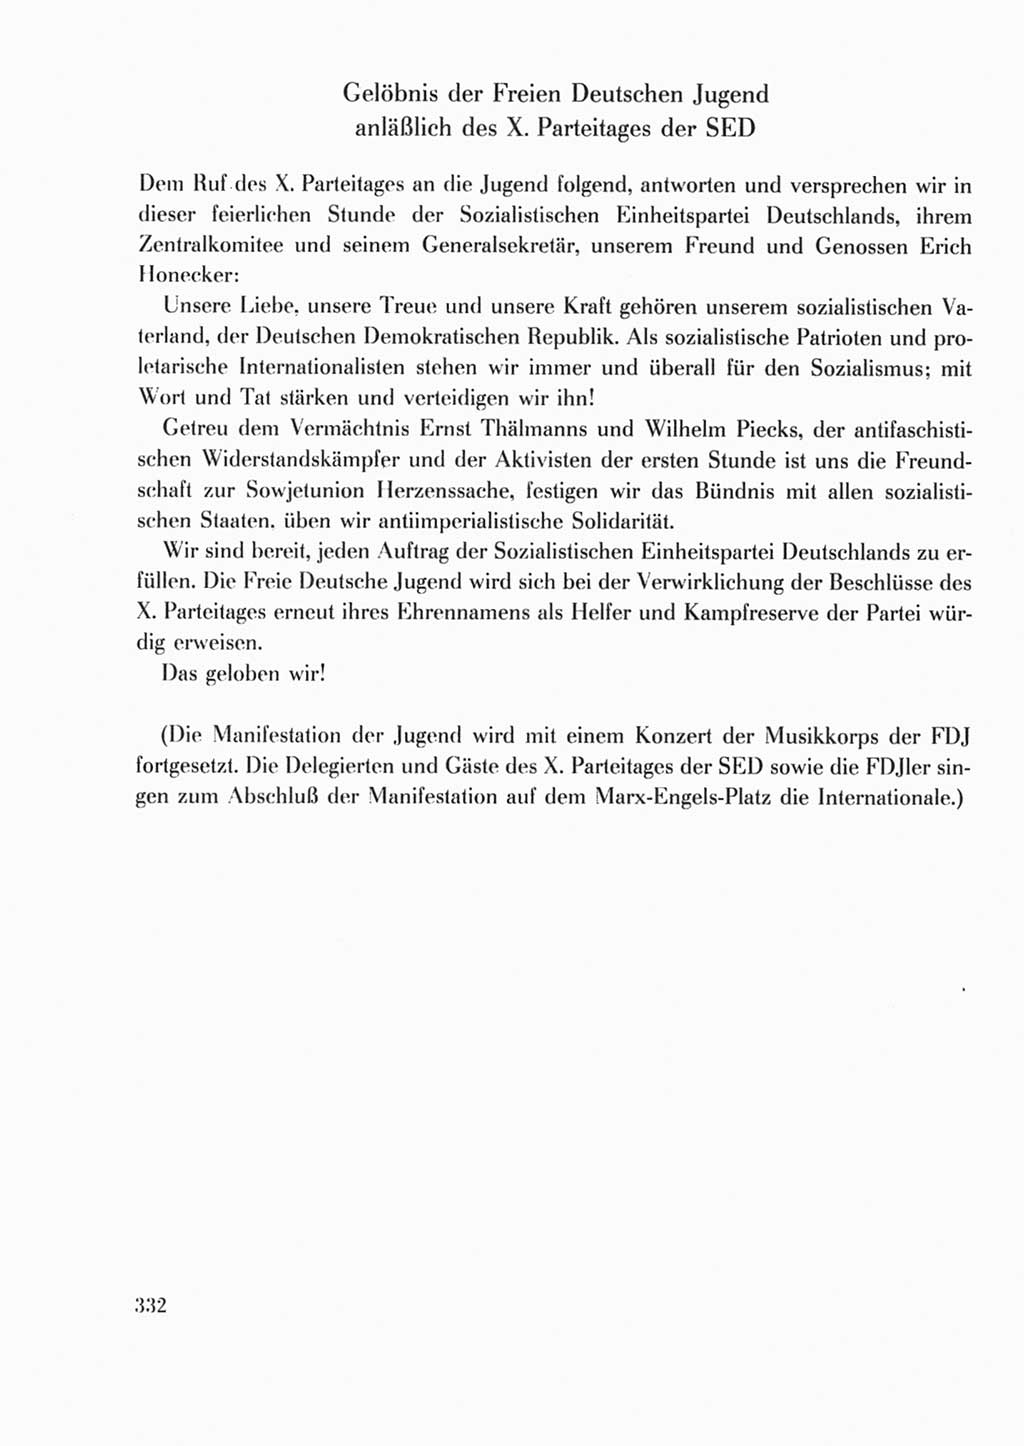 Protokoll der Verhandlungen des Ⅹ. Parteitages der Sozialistischen Einheitspartei Deutschlands (SED) [Deutsche Demokratische Republik (DDR)] 1981, Band 2, Seite 332 (Prot. Verh. Ⅹ. PT SED DDR 1981, Bd. 2, S. 332)